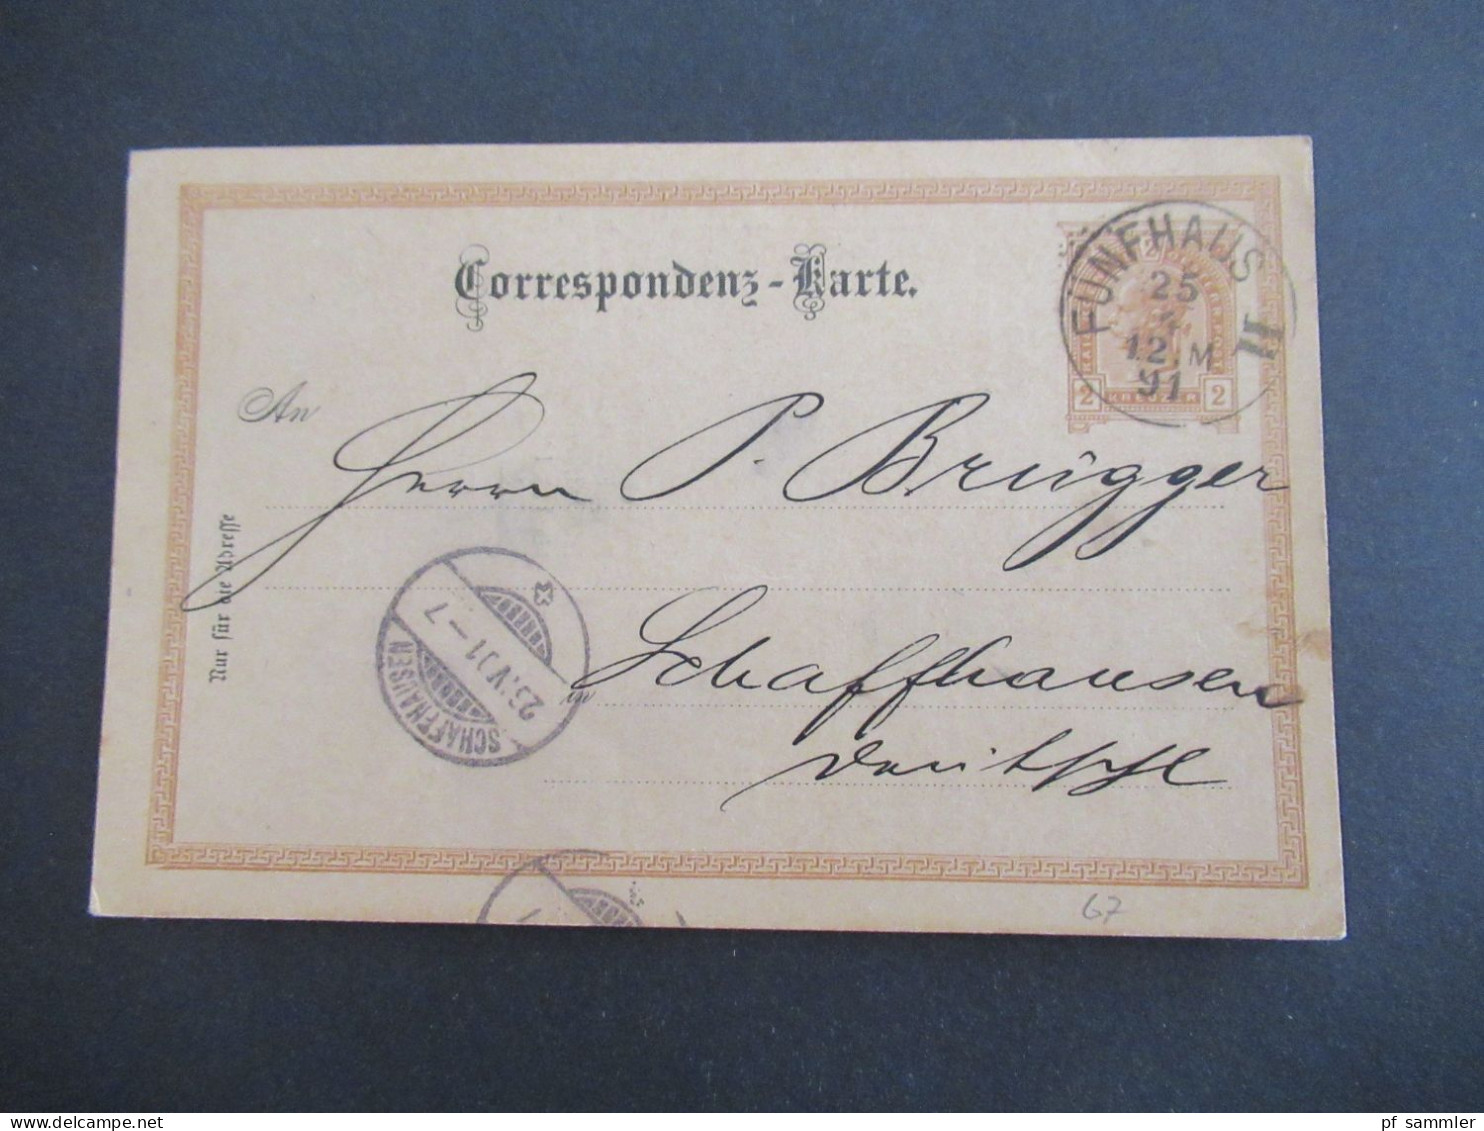 Österreich 1891 GA 2 Kreuzer Bedruckte PK Géza Baneth, Weingrosshandlung Wien Stempel Fünfhaus II - Schaffhausen Schweiz - Cartes Postales